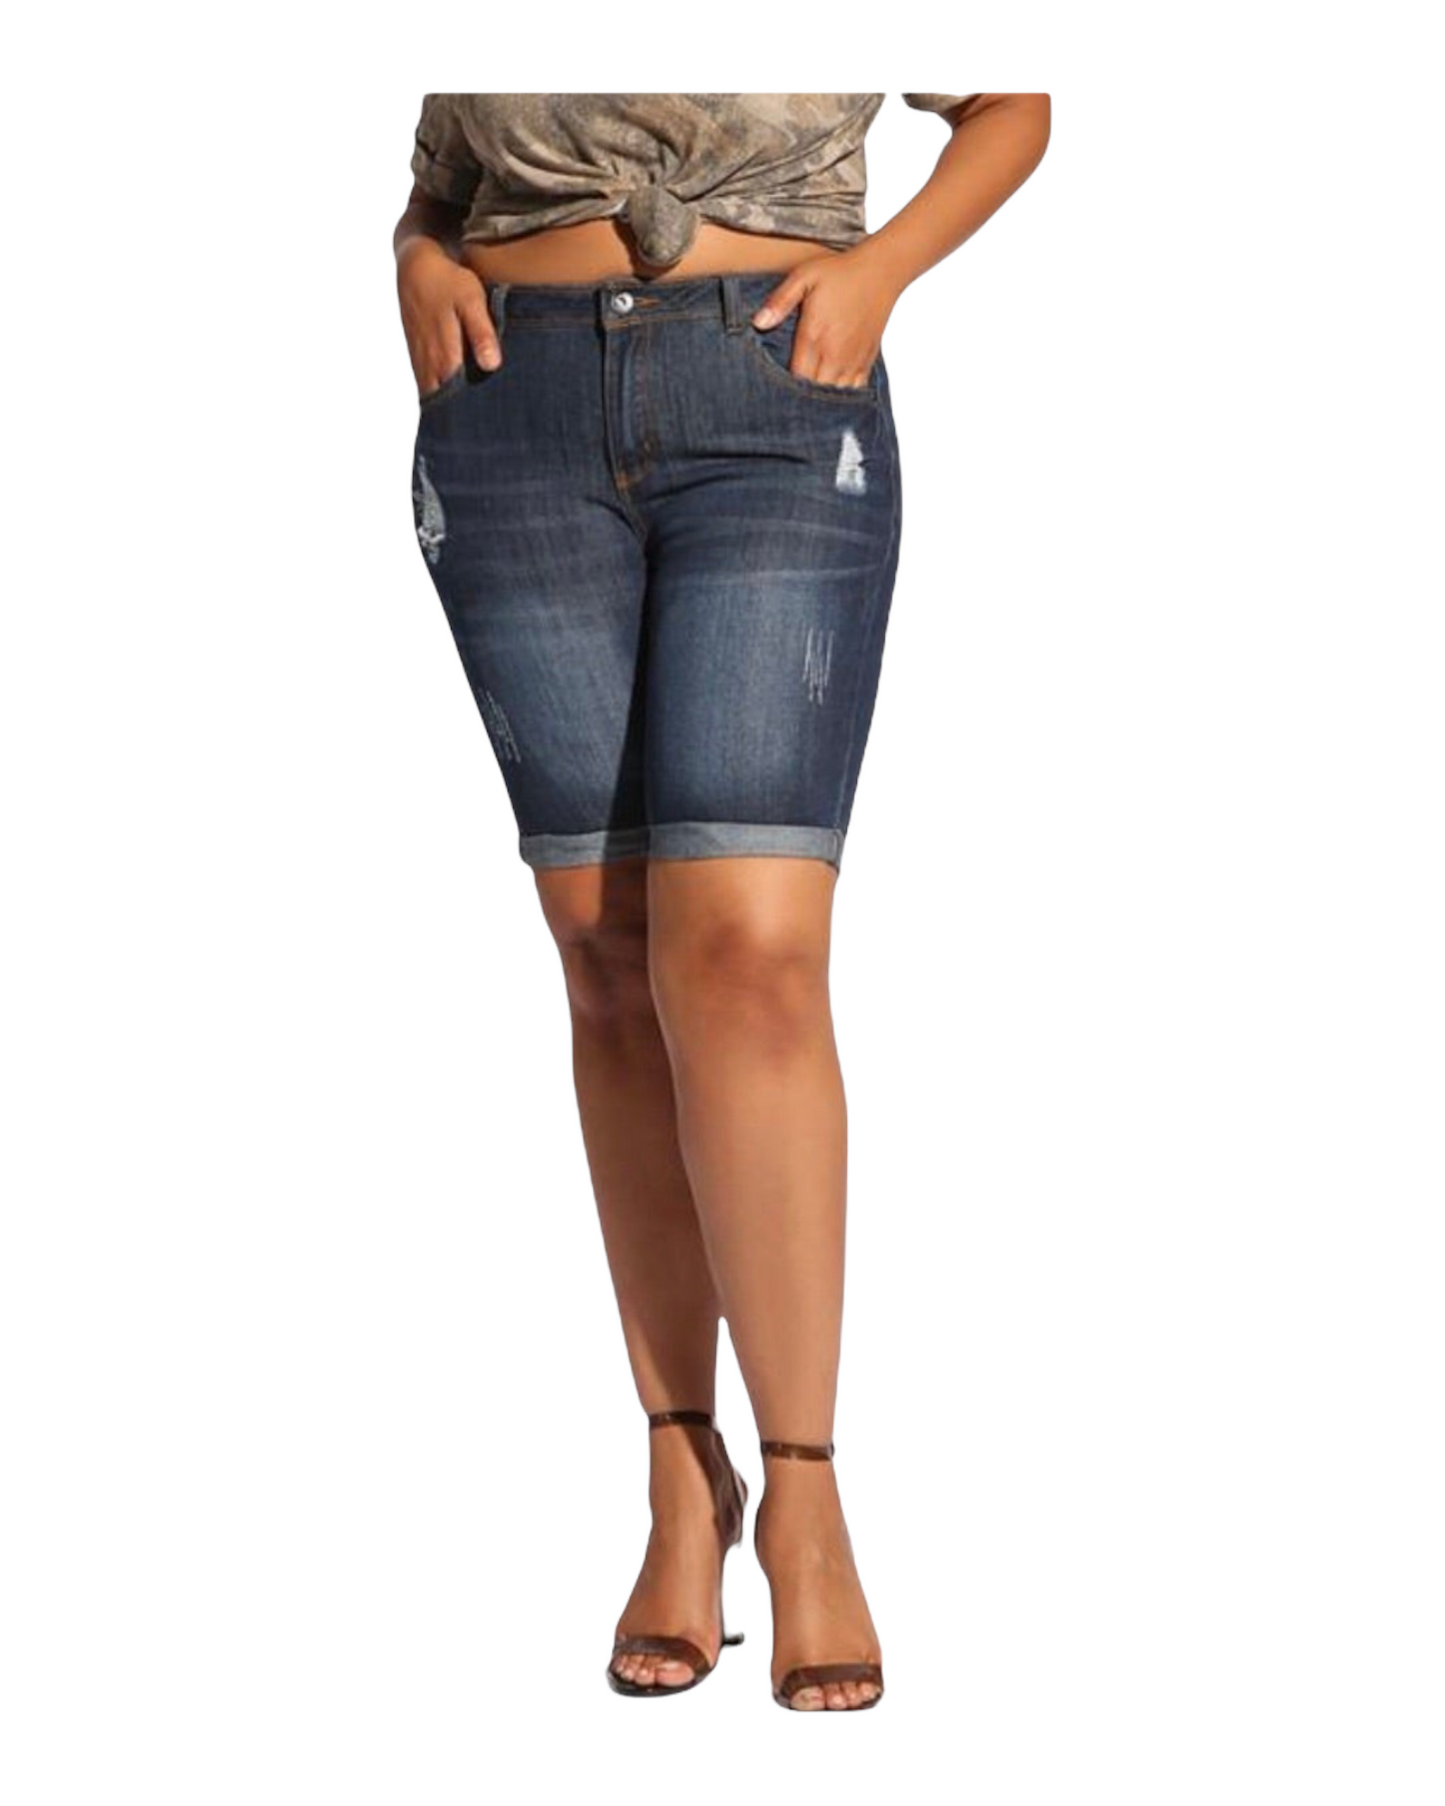 Bermuda Denim Pant - Regular Size